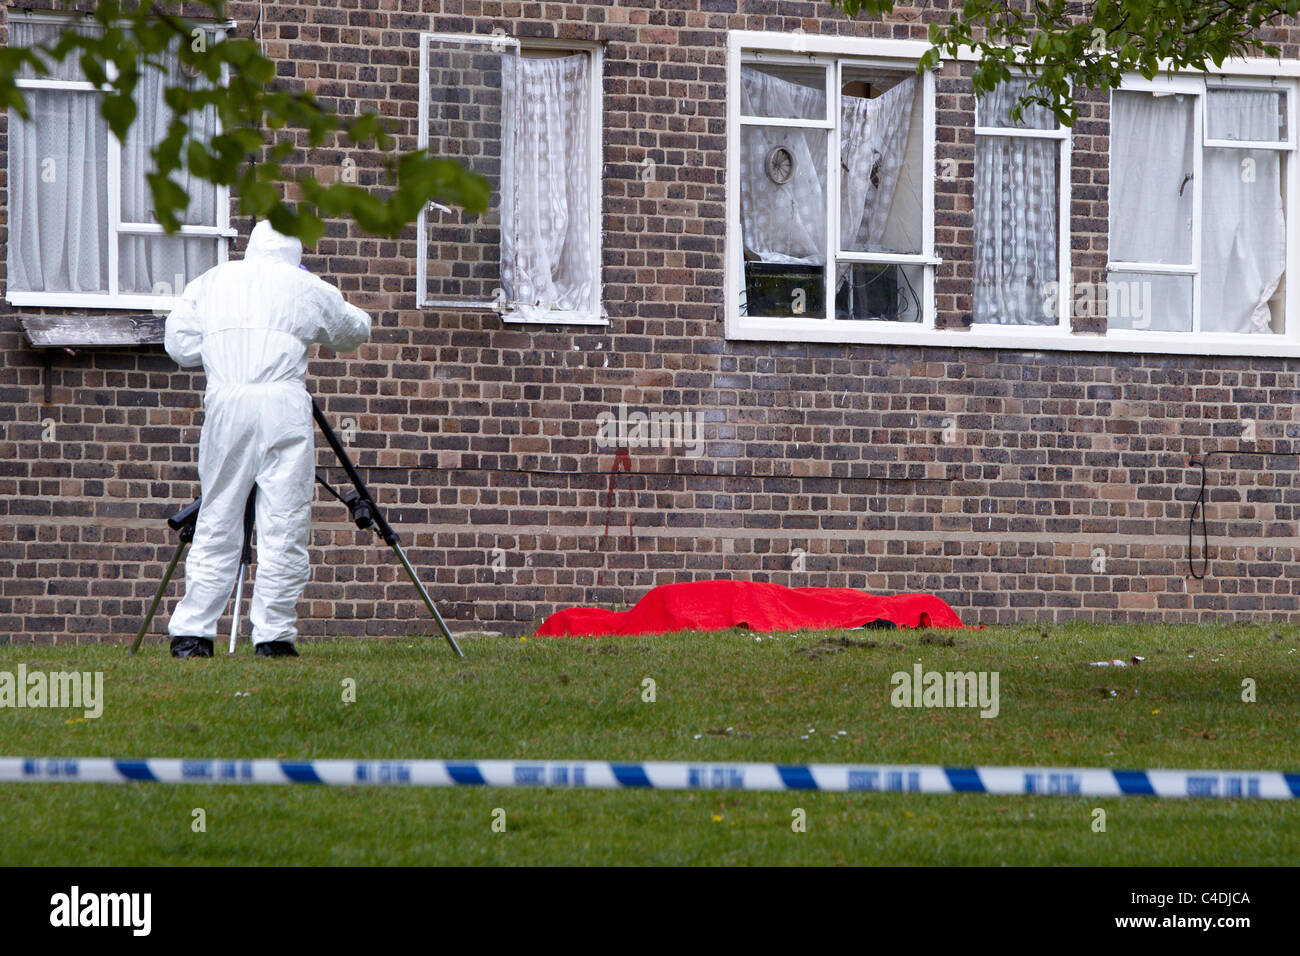 Polizei forensischen und Suche Offiziere bei der Szene von einem tödlichen Schüssen in Clapham Park Gegend von London Stockfoto